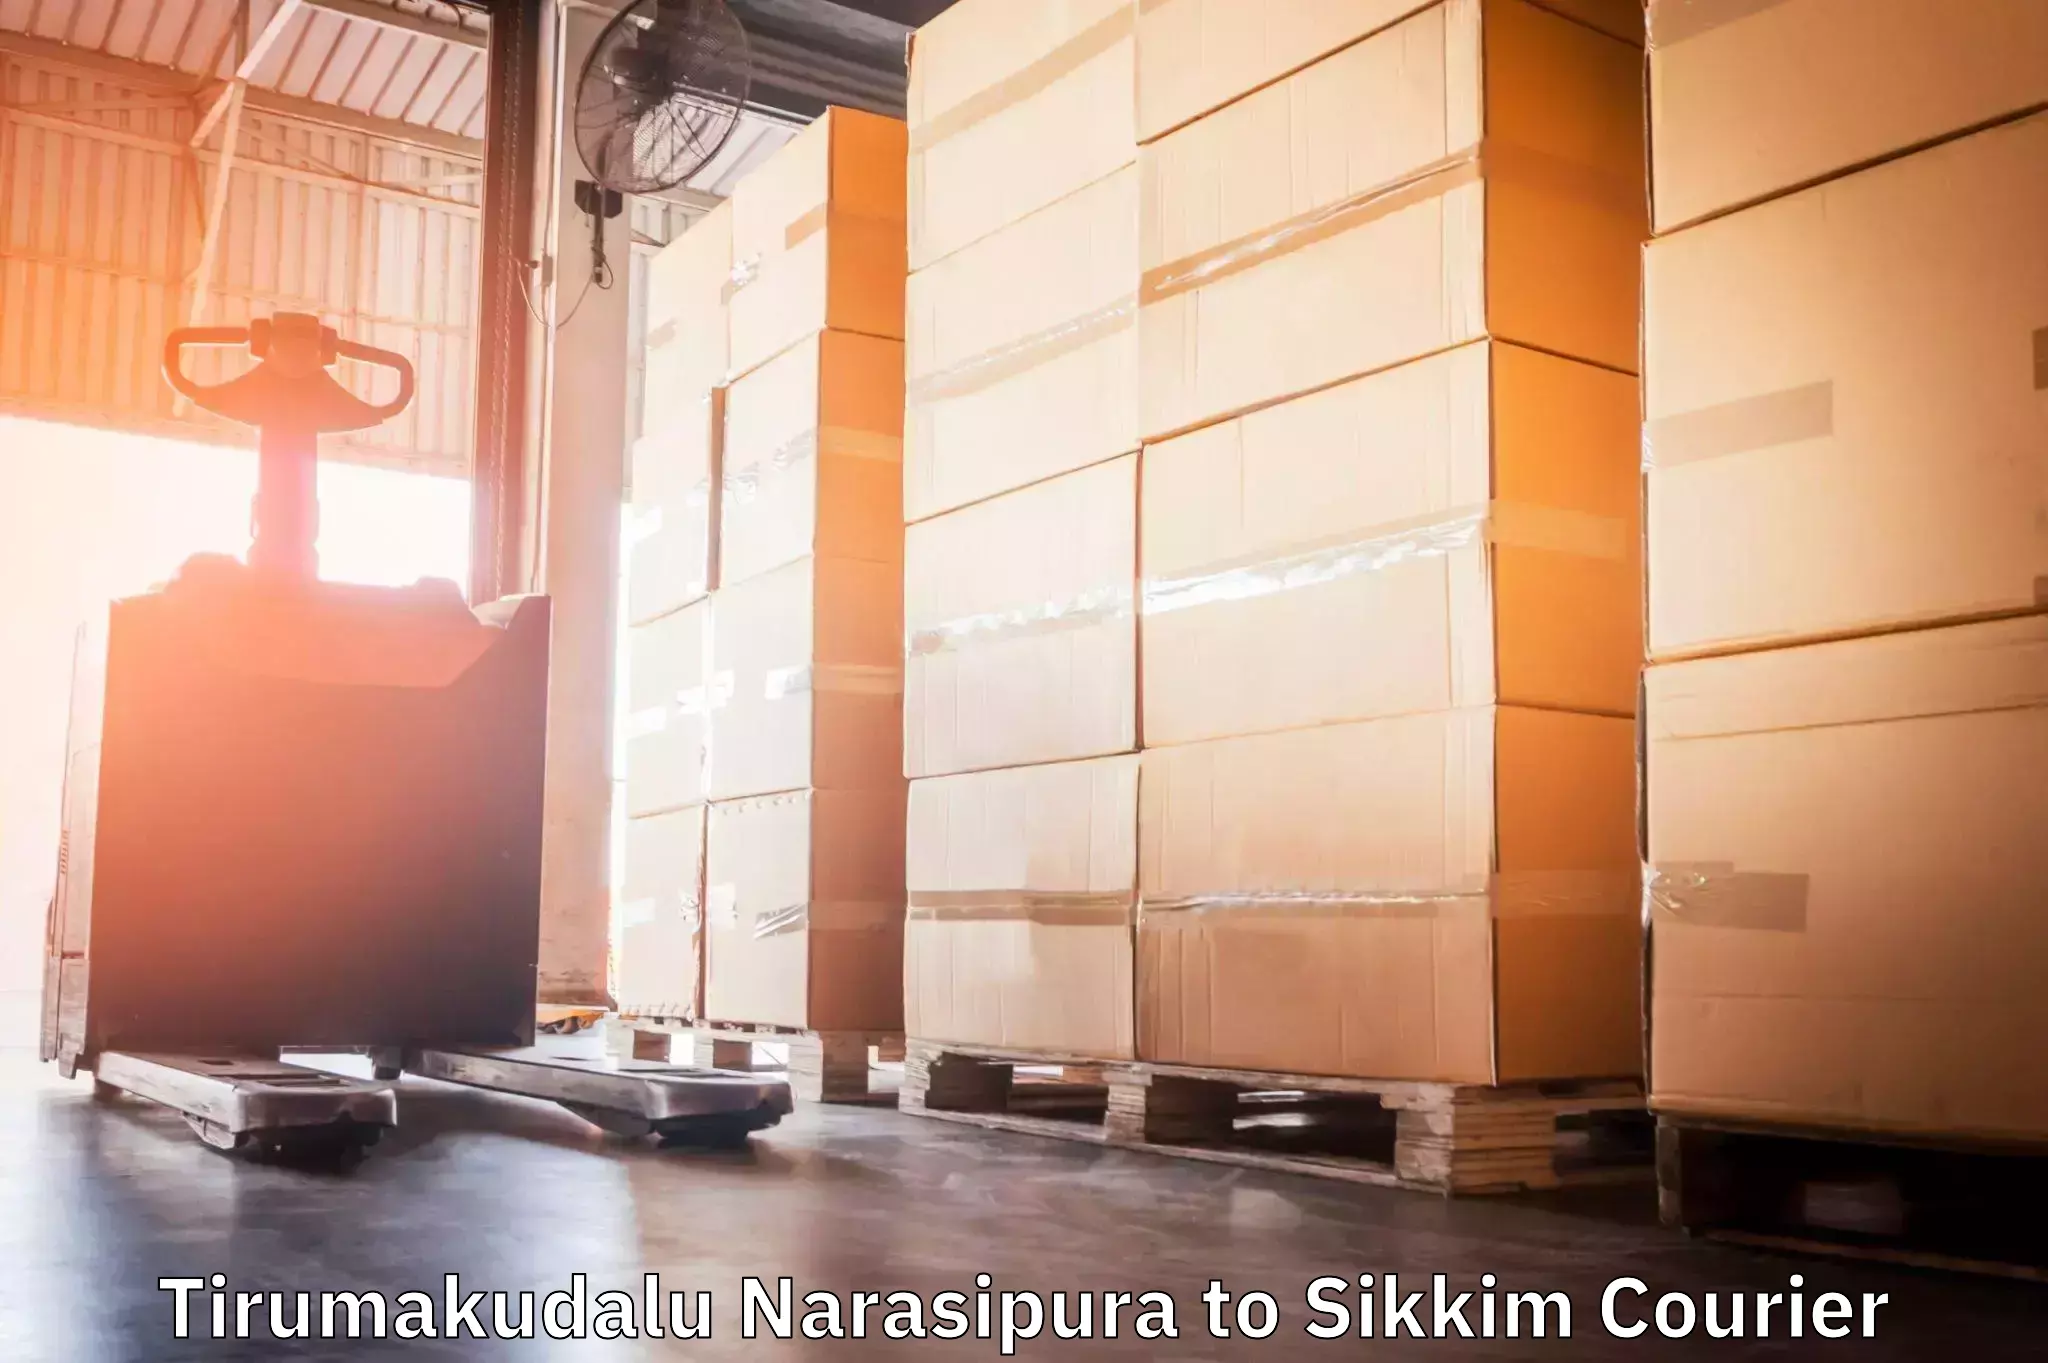 Reliable courier service Tirumakudalu Narasipura to South Sikkim